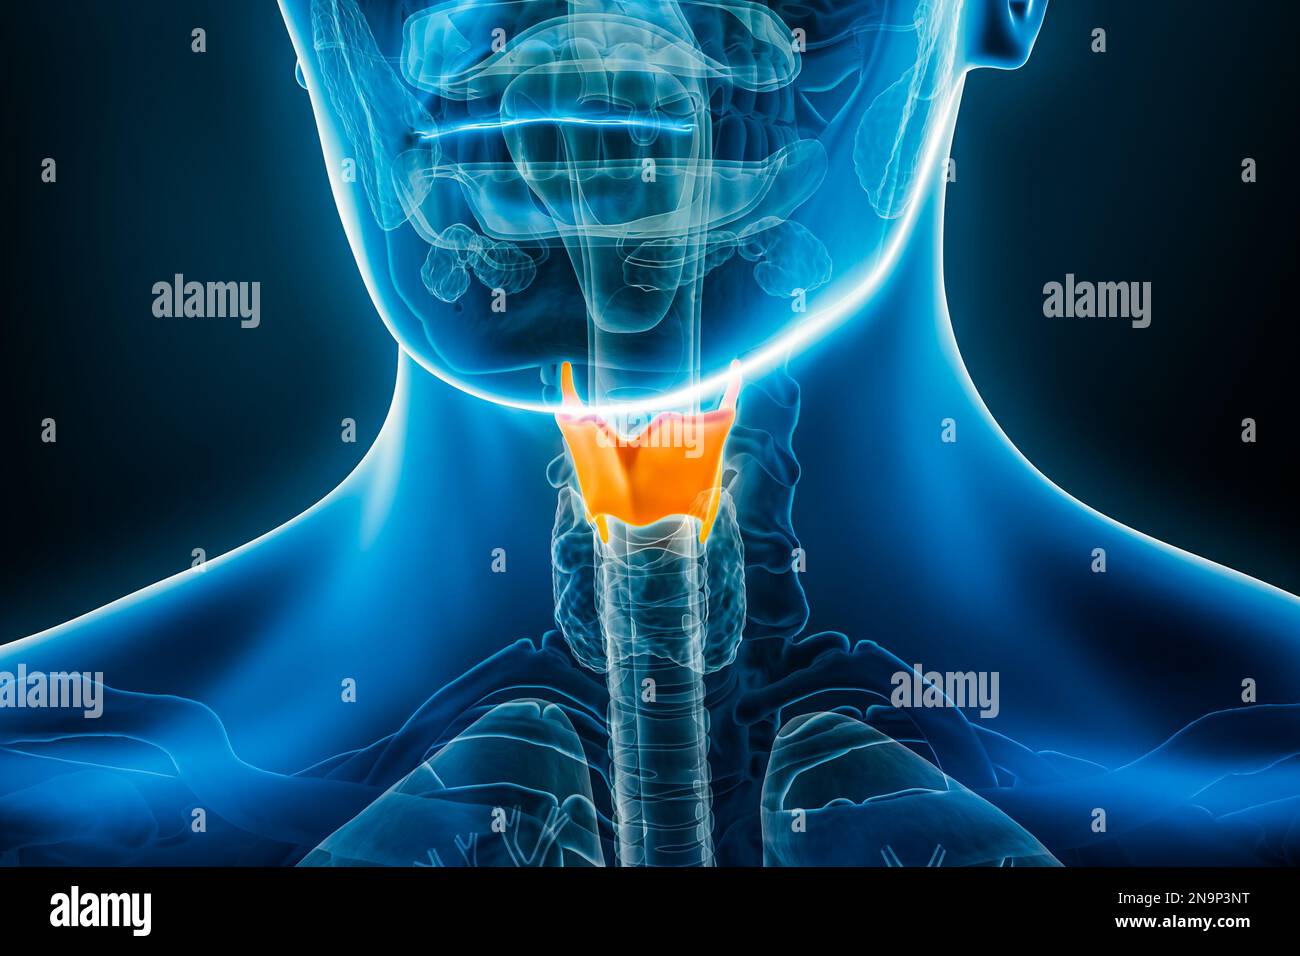 Illustration du rendu de la radiographie du cartilage thyroïdien 3D avec contours de corps mâles. Anatomie humaine, médecine, biologie, science, concepts de santé. Banque D'Images